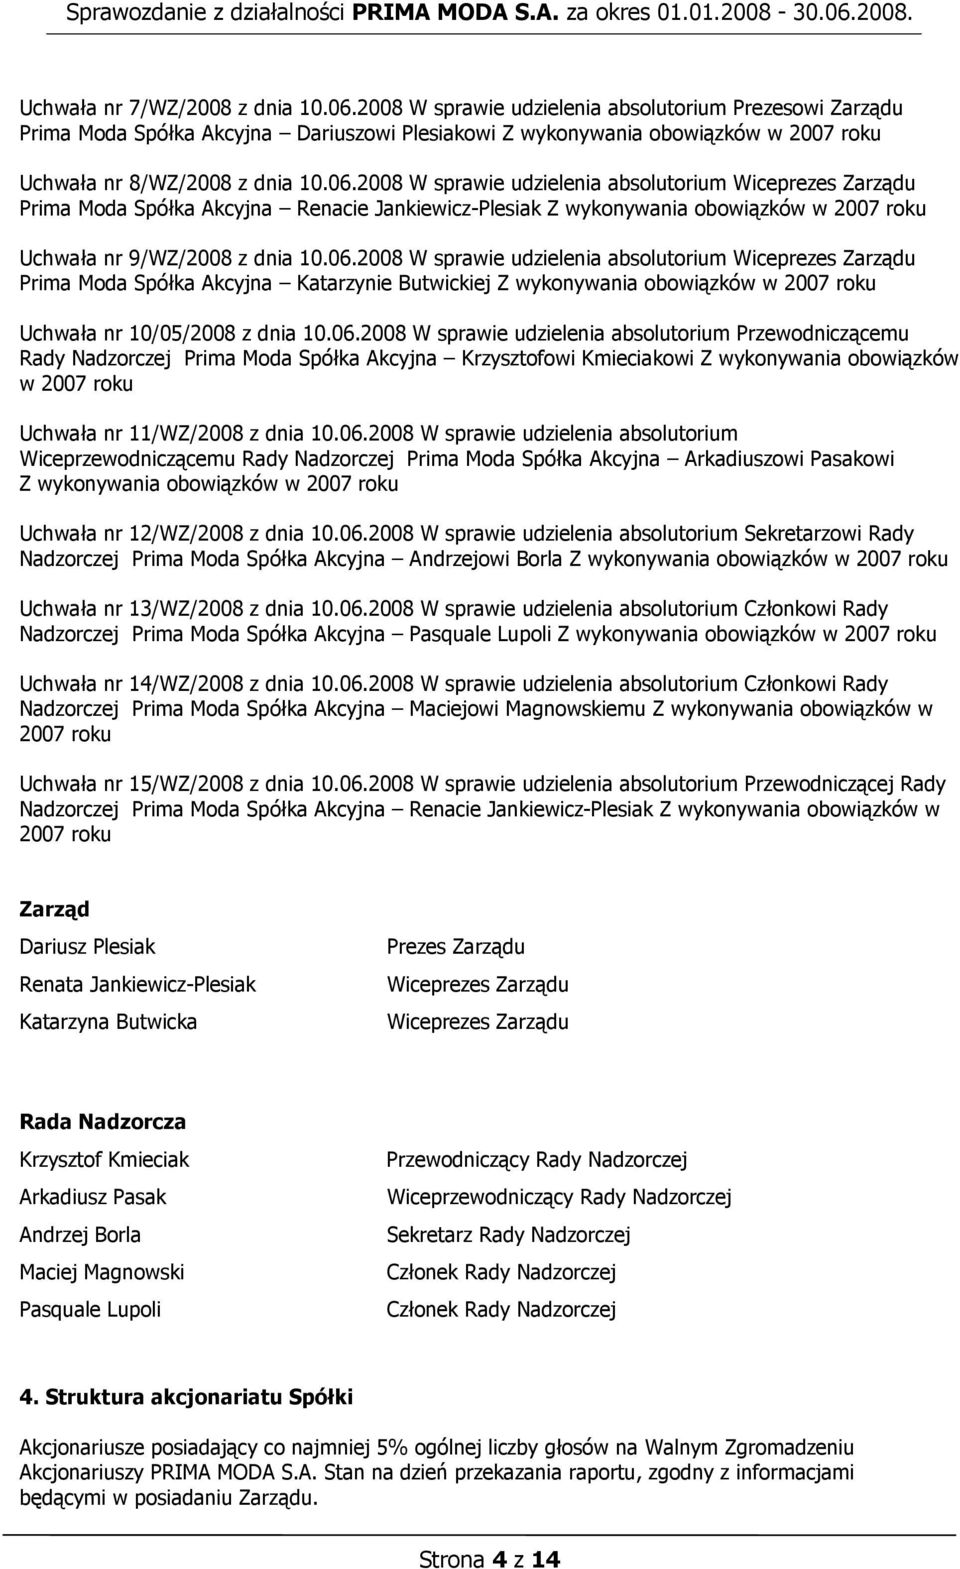 2008 W sprawie udzielenia absolutorium Wiceprezes Zarządu Prima Moda Spółka Akcyjna Renacie Jankiewicz-Plesiak Z wykonywania obowiązków w 2007 roku Uchwała nr 9/WZ/2008 z dnia 10.06.